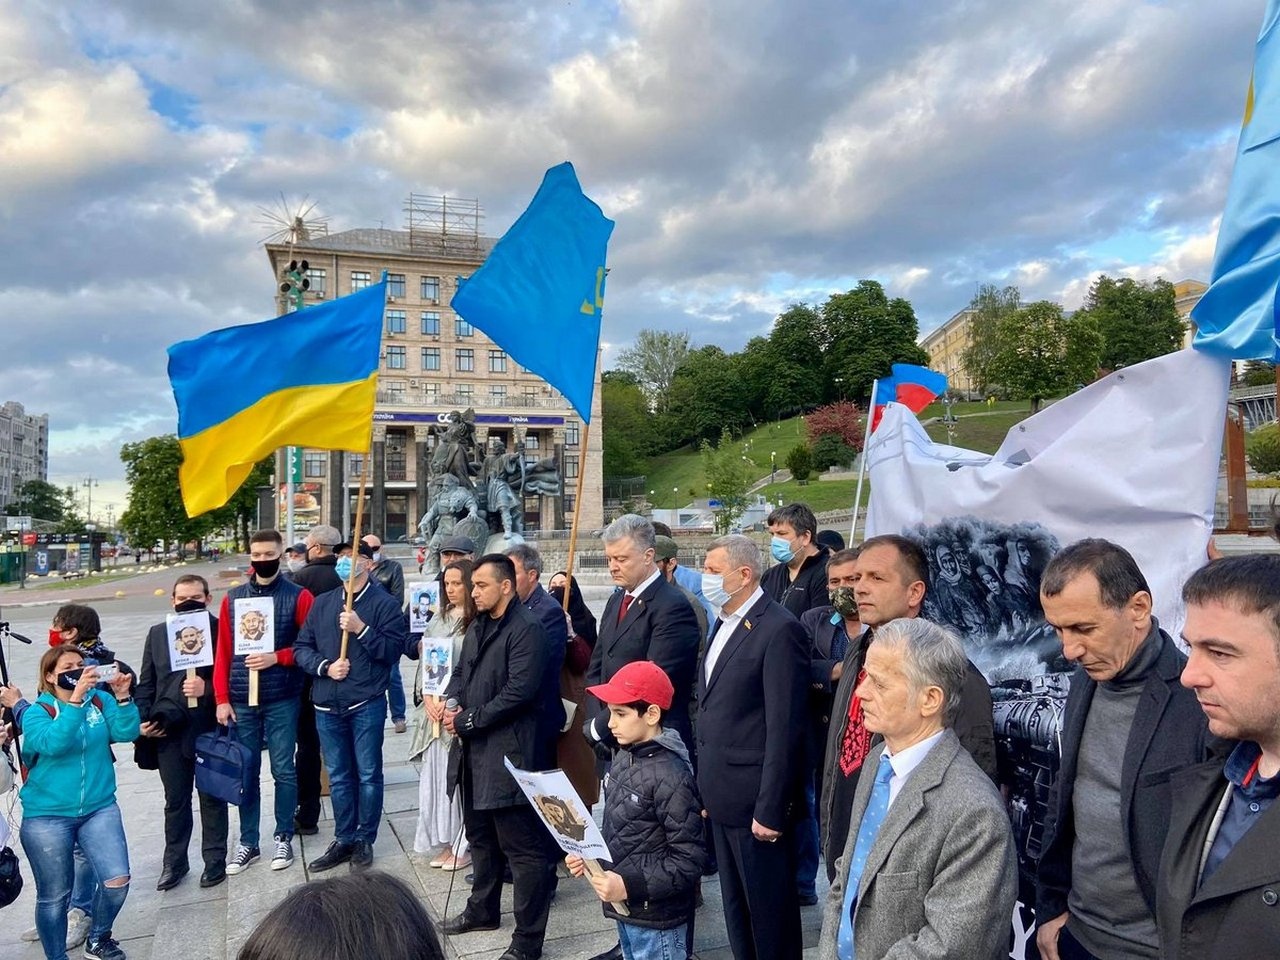 Мустафа Джемилев (третий справа) и Пётр Порошенко (в центре) на антироссийском митинге в Киеве, май 2020 г.